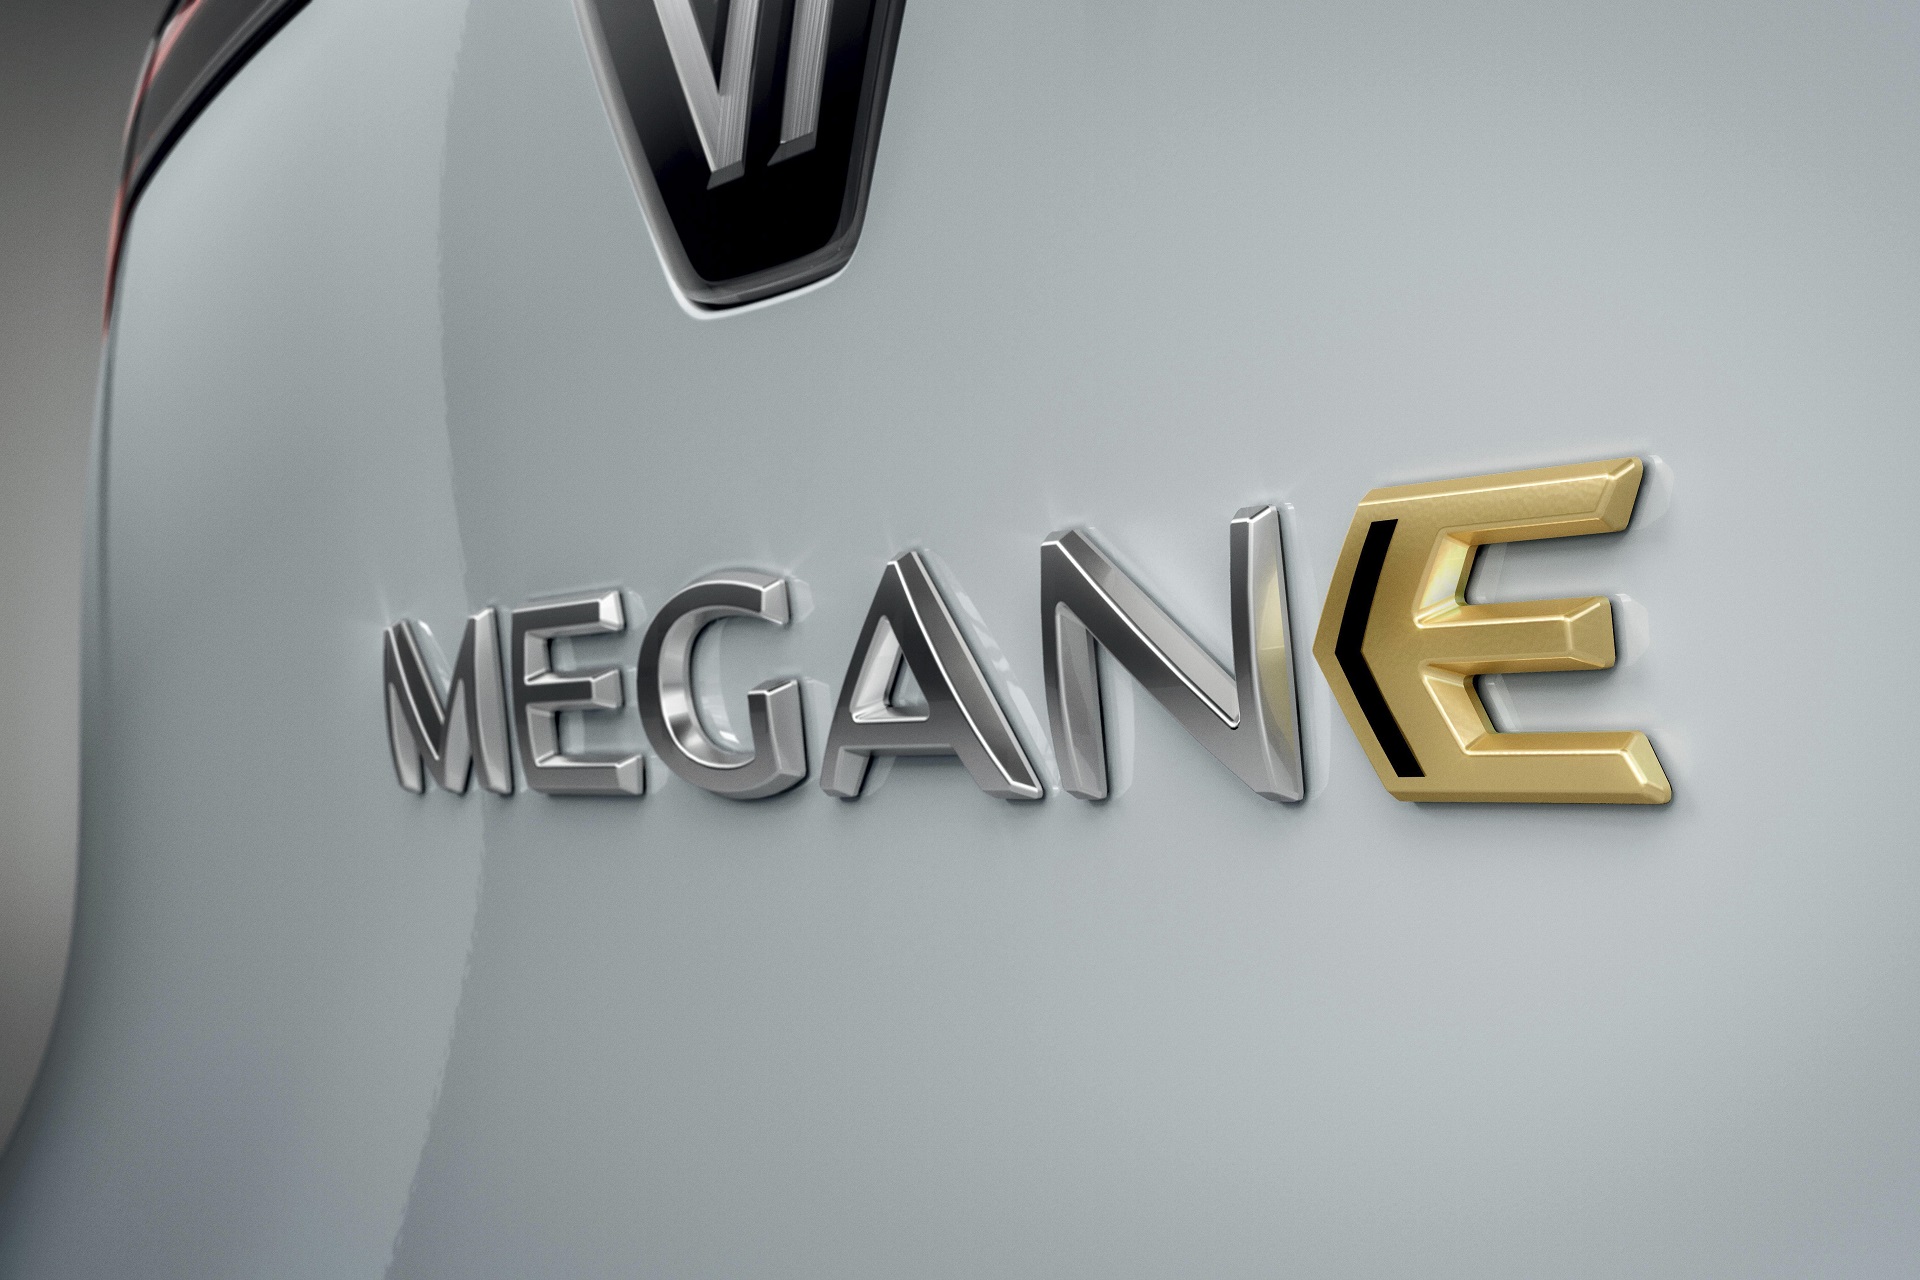 Renault Mégane 